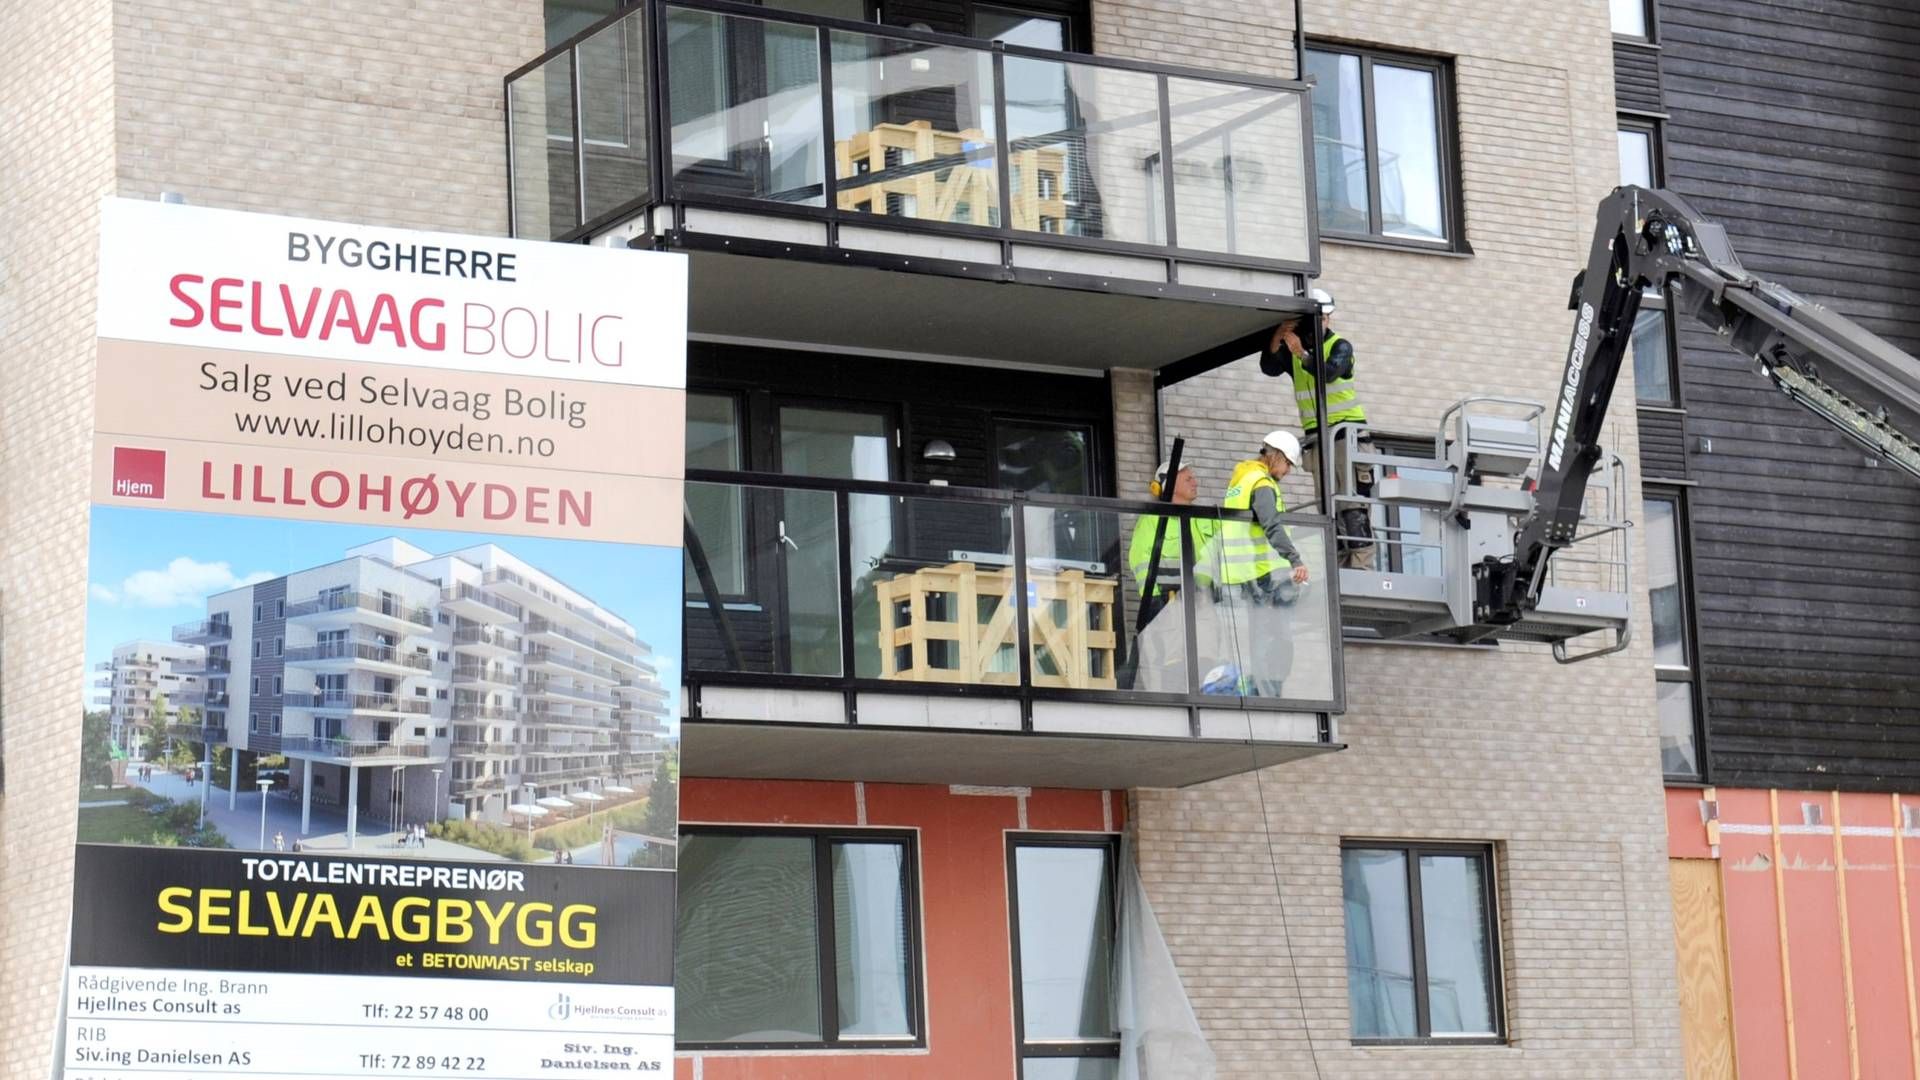 MÅTTE TA GREP: Antall skader går noe ned, men Selvaag Bolig opplevde en betydelig økning i antall registrerte uønskede hendelser på selskapets byggeplasser i 2020 og 2021 (arkivbildet). | Foto: Terje Pedersen, NTB